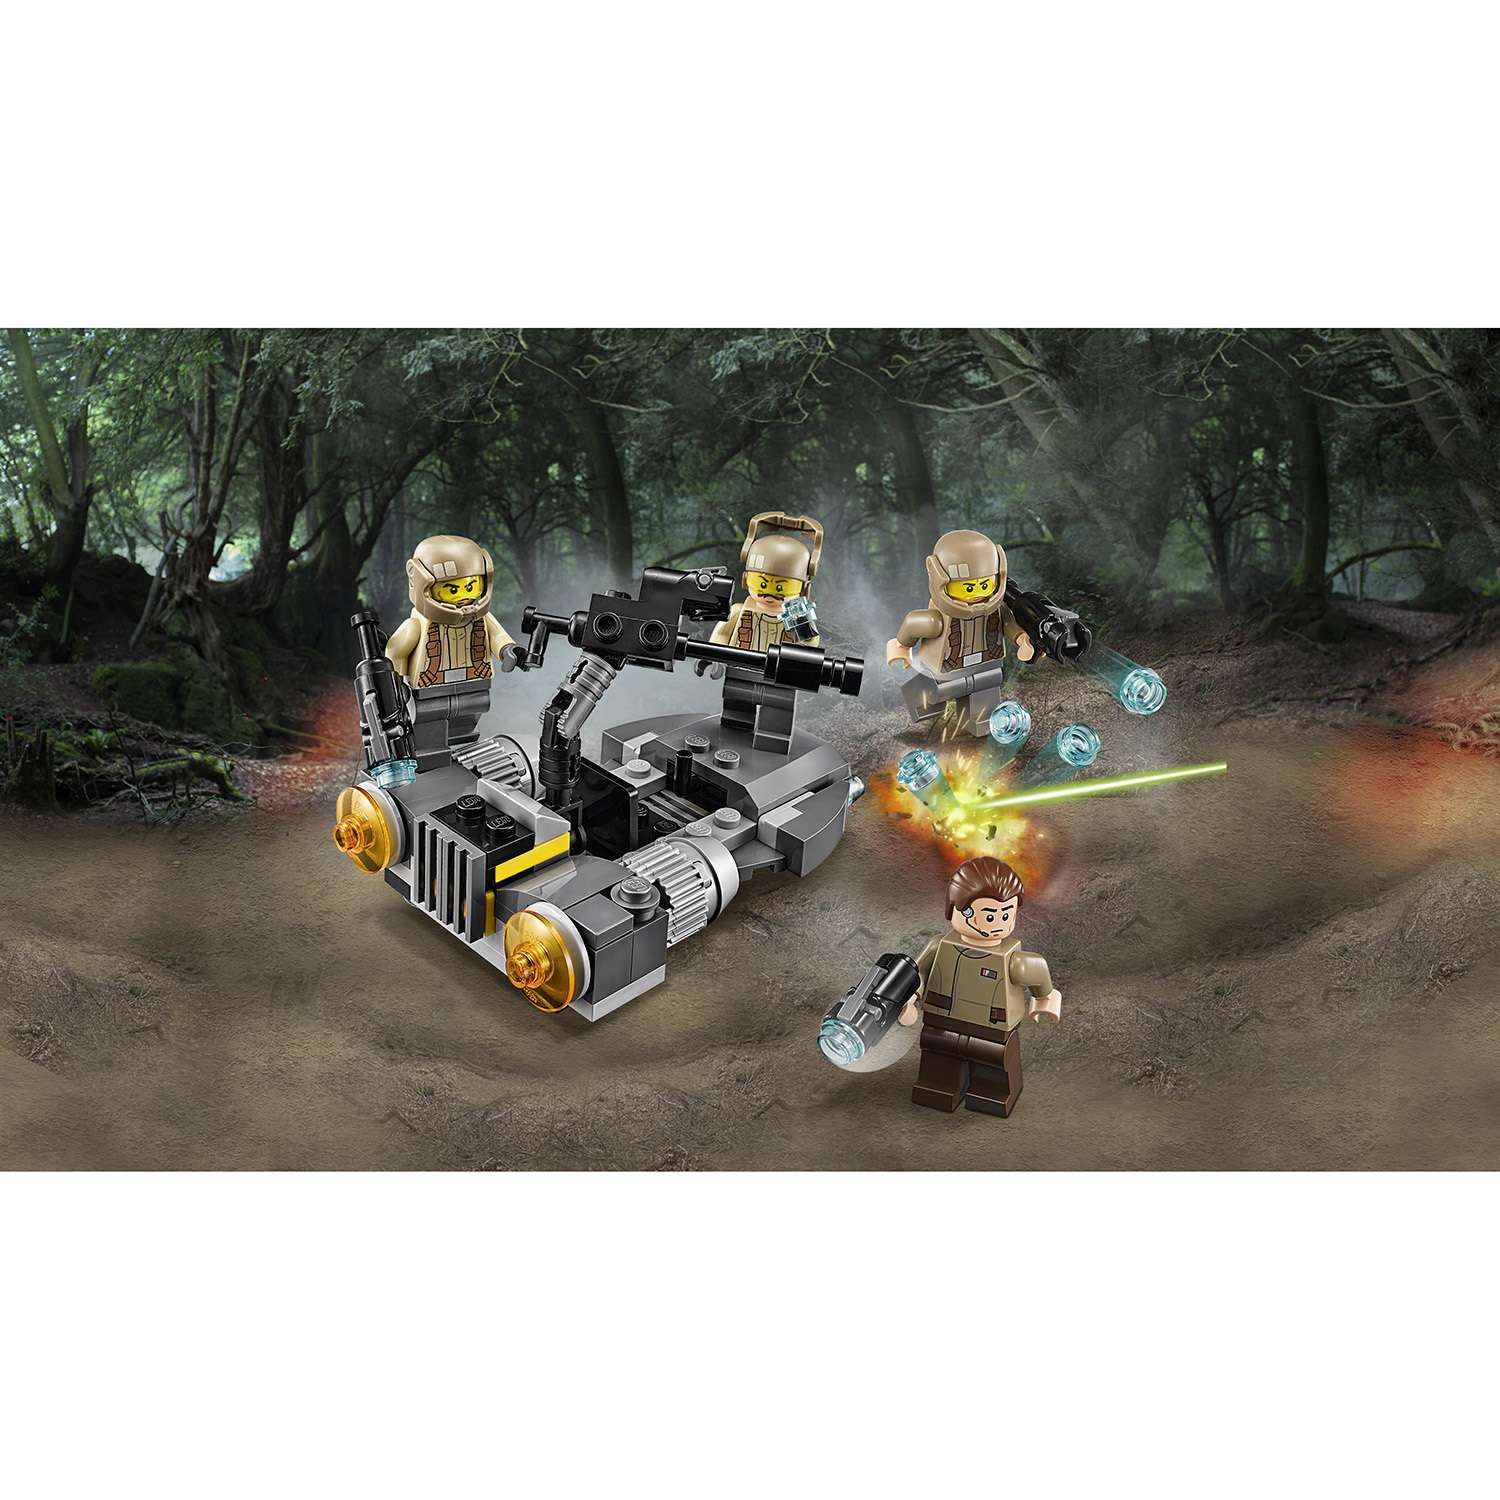 Конструктор LEGO Star Wars TM Боевой набор Сопротивления (75131) - фото 4